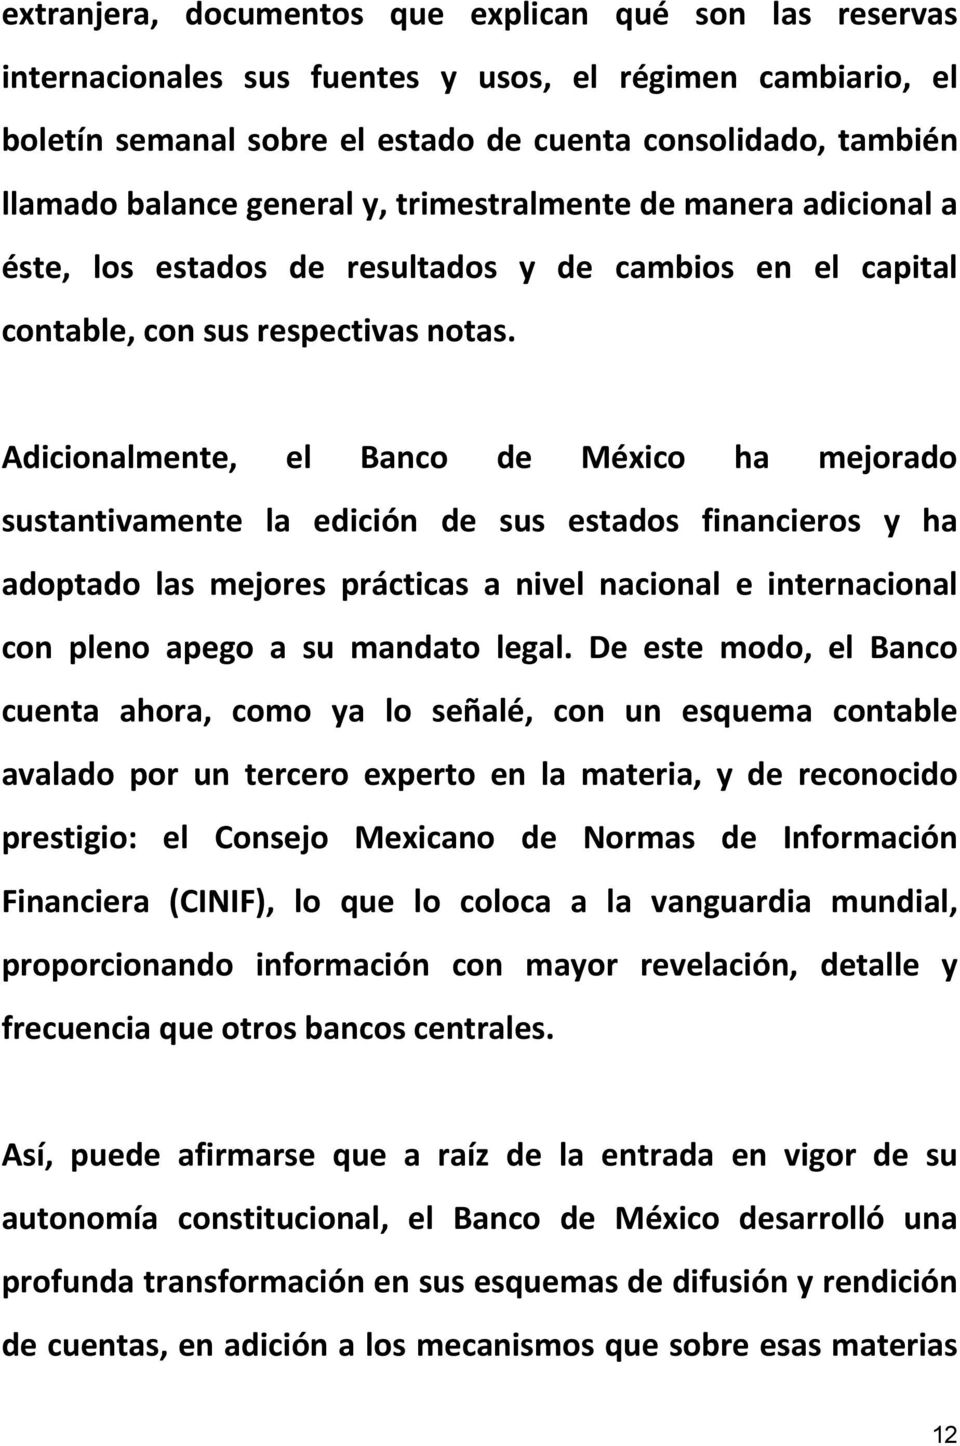 Adicionalmente, el Banco de México ha mejorado sustantivamente la edición de sus estados financieros y ha adoptado las mejores prácticas a nivel nacional e internacional con pleno apego a su mandato